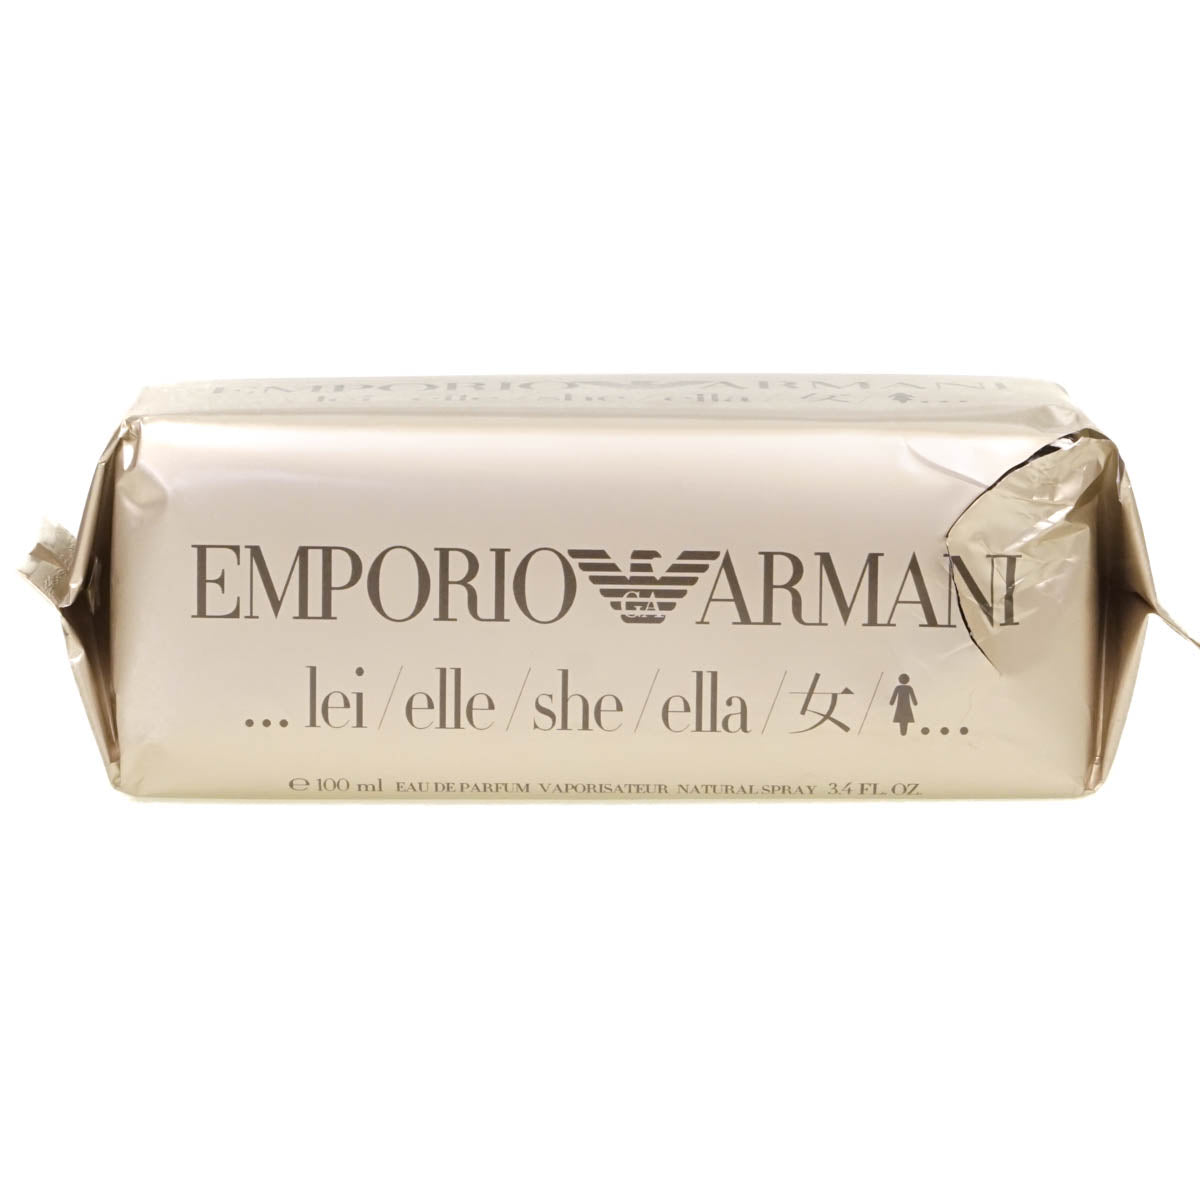 Emporio Armani She 100ml Eau De Parfum (Blemished Box)